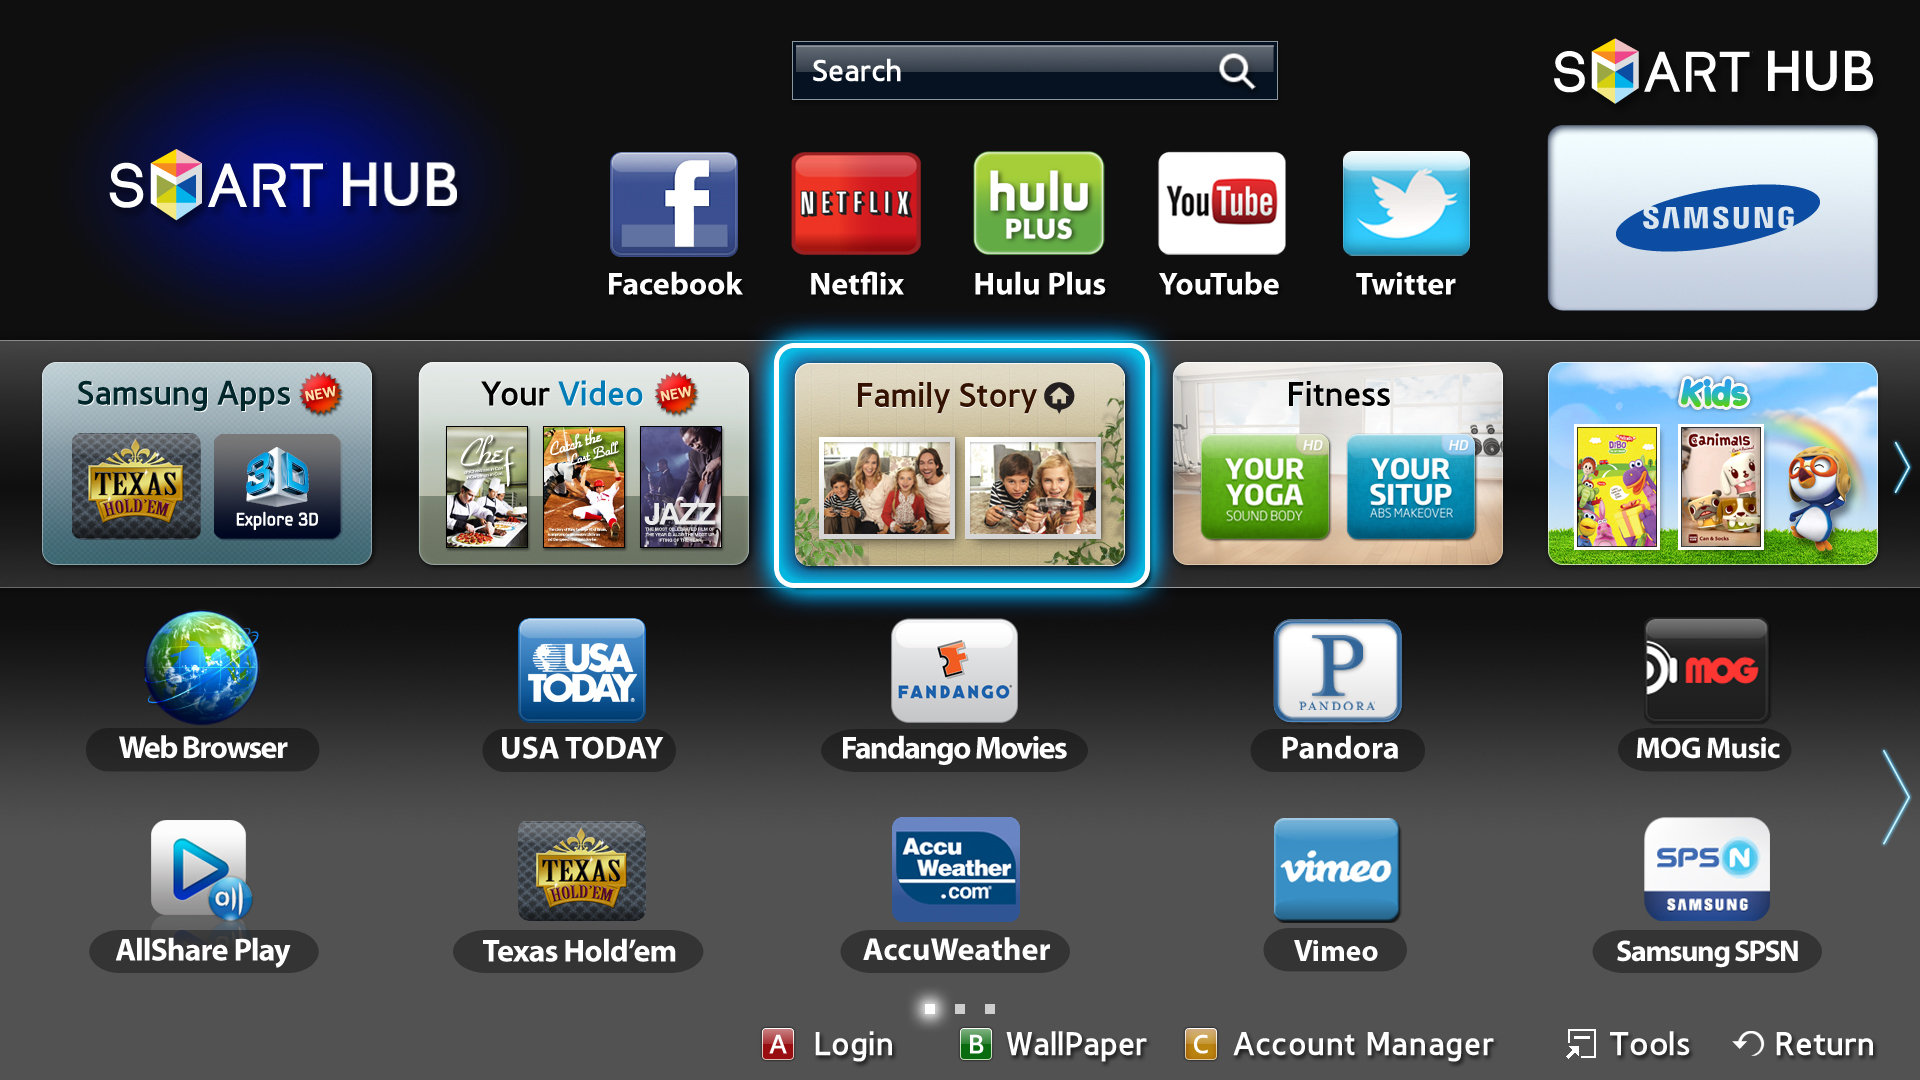 Телевизор закачать можно. Смарт ТВ Samsung. Samsung apps TV Smart Hub приложения. Смарт ТВ самсунг смарт Hub. Телевизор Samsung Smart Hub 2012.